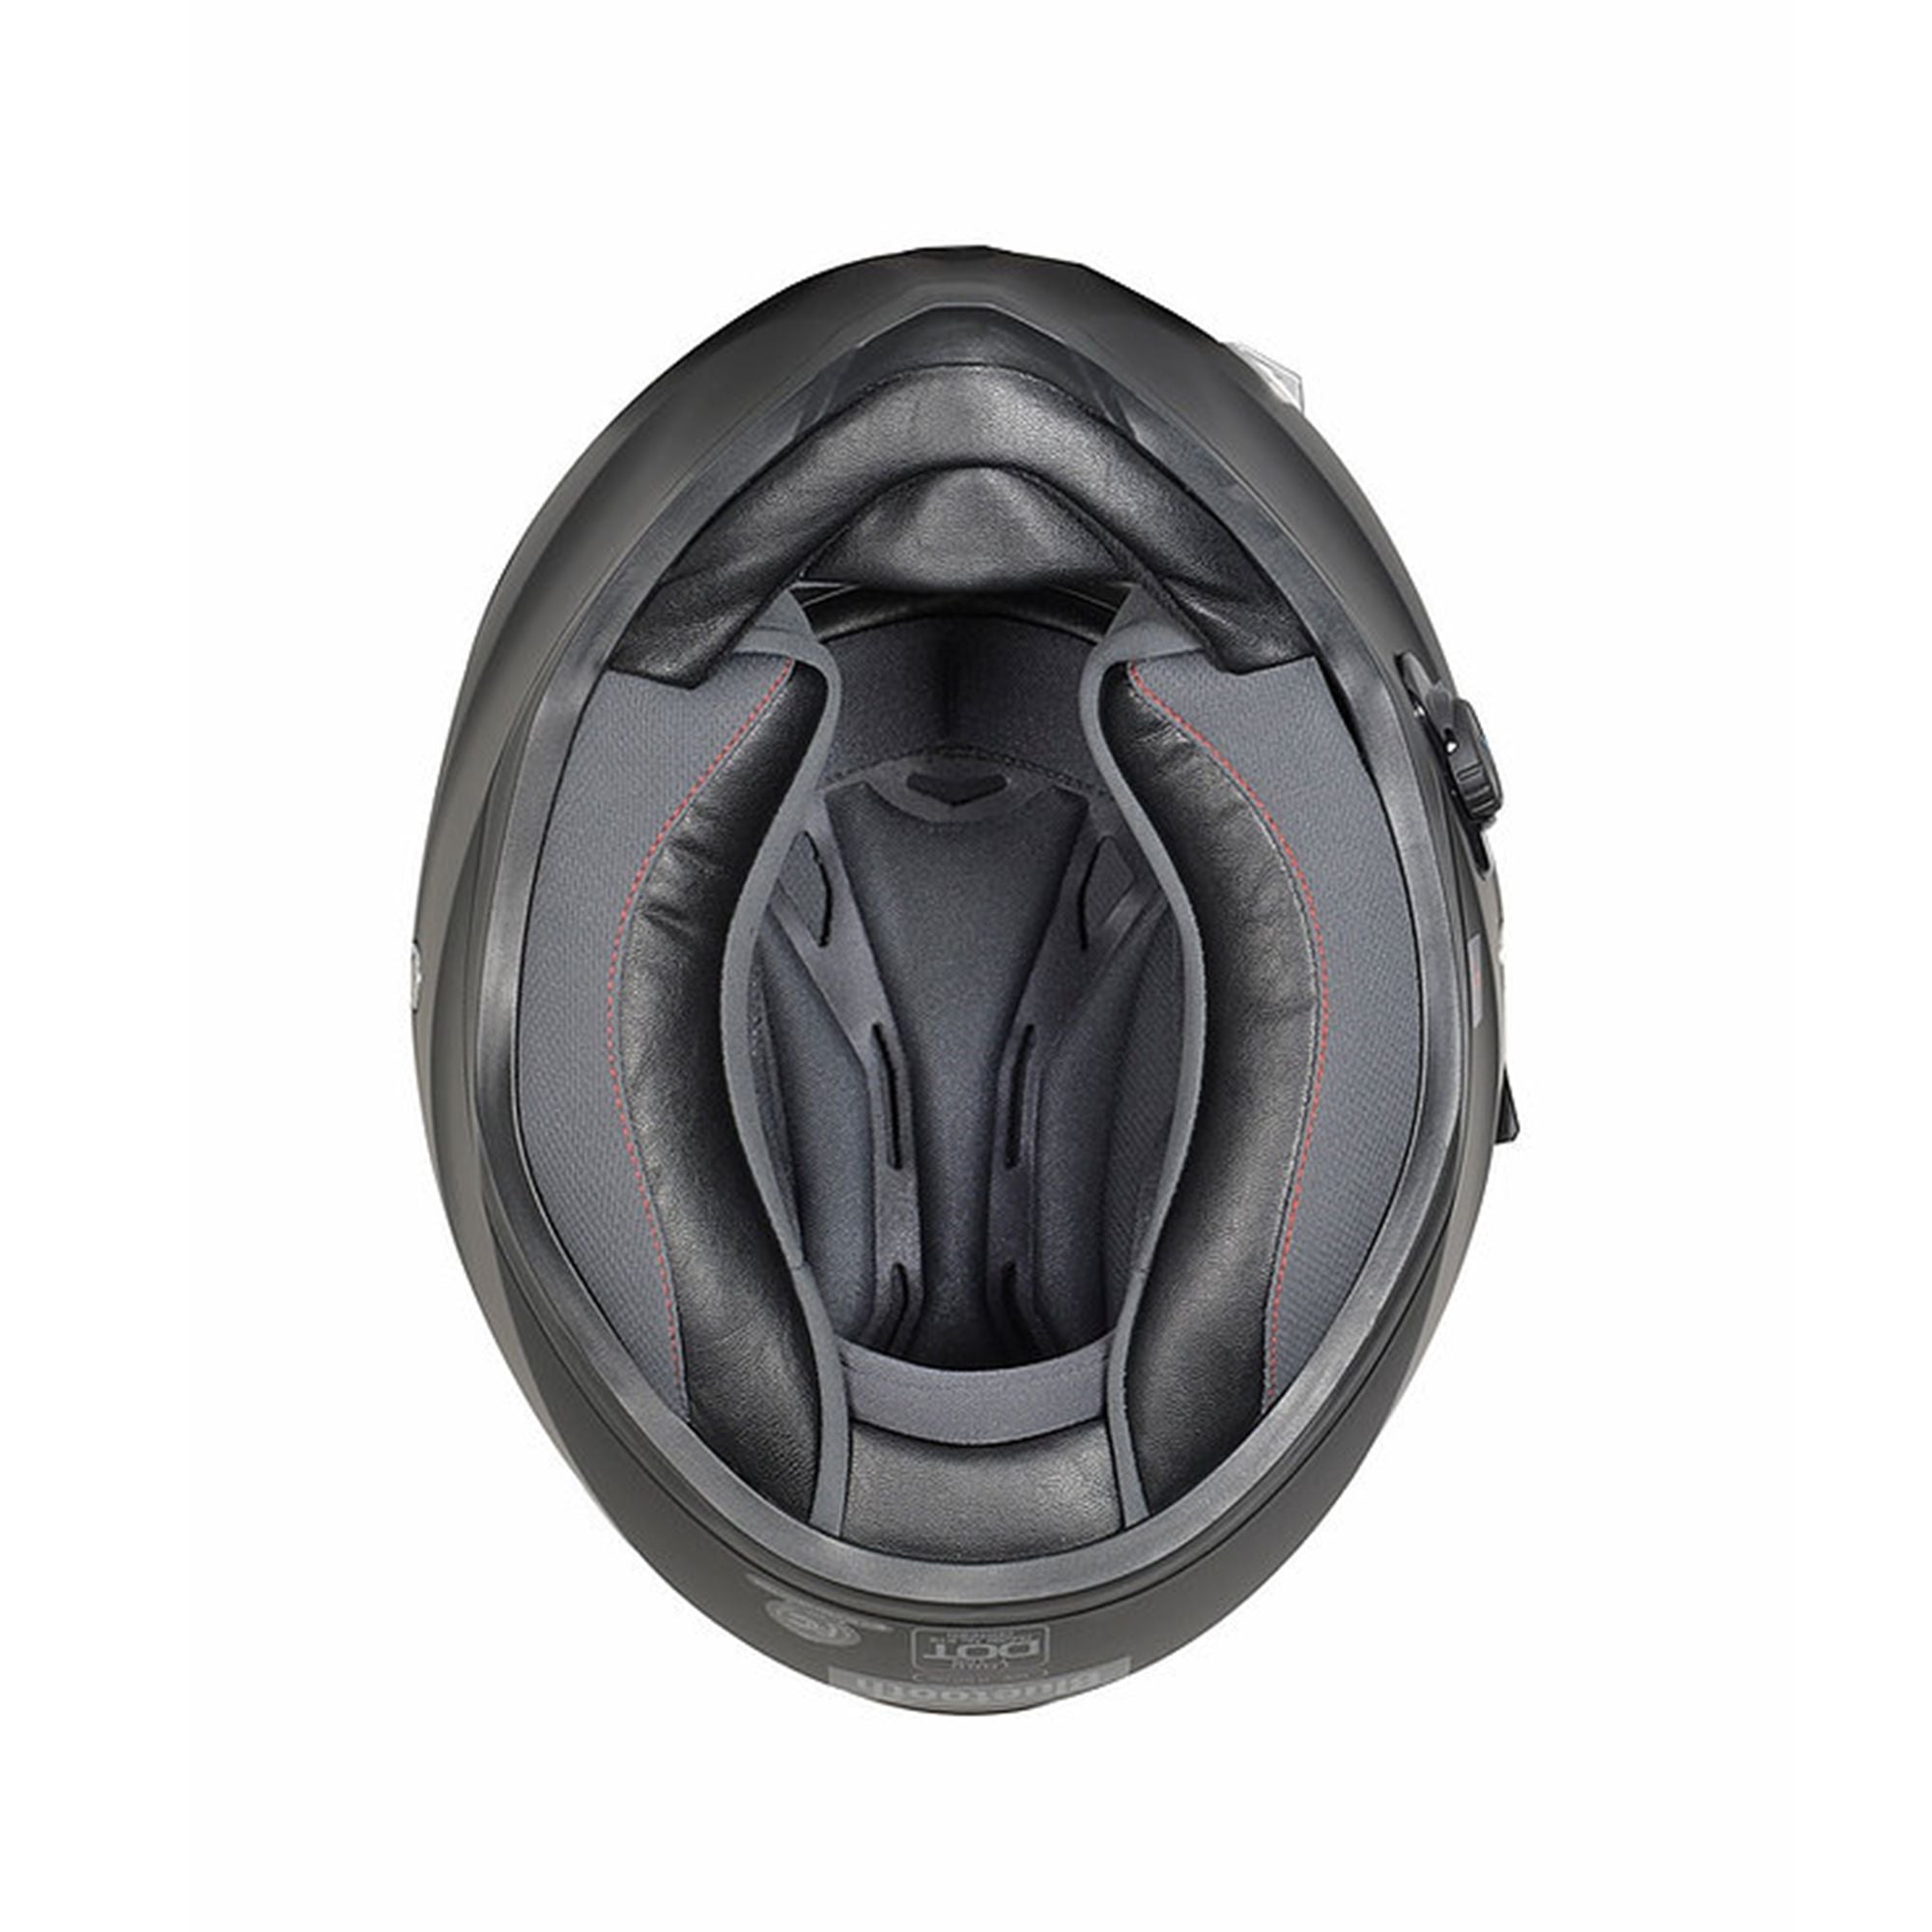 TORC T-15 Midnight Rider Full Face Street Motorcycle Helmet